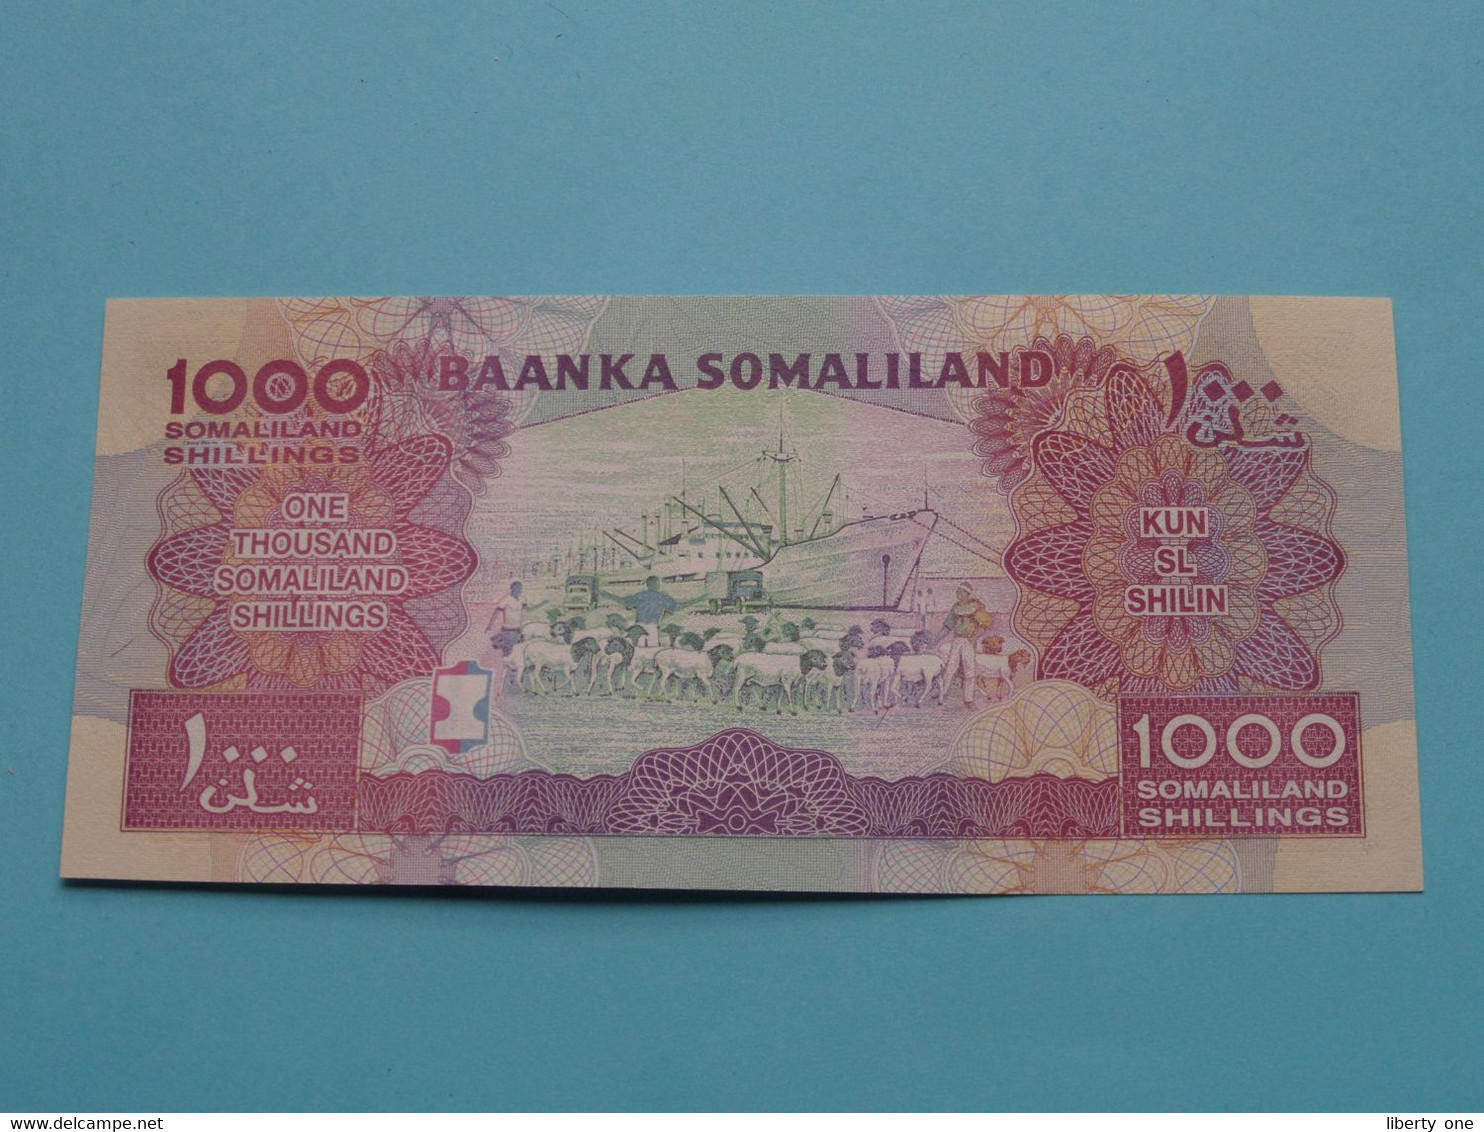 1000 Somaliland Shillings - KUN SL SHILIN Hargeysa 2014 ( FE117942 ) Baanka SOMALILAND ( For Grade See SCANS ) UNC ! - Somalia